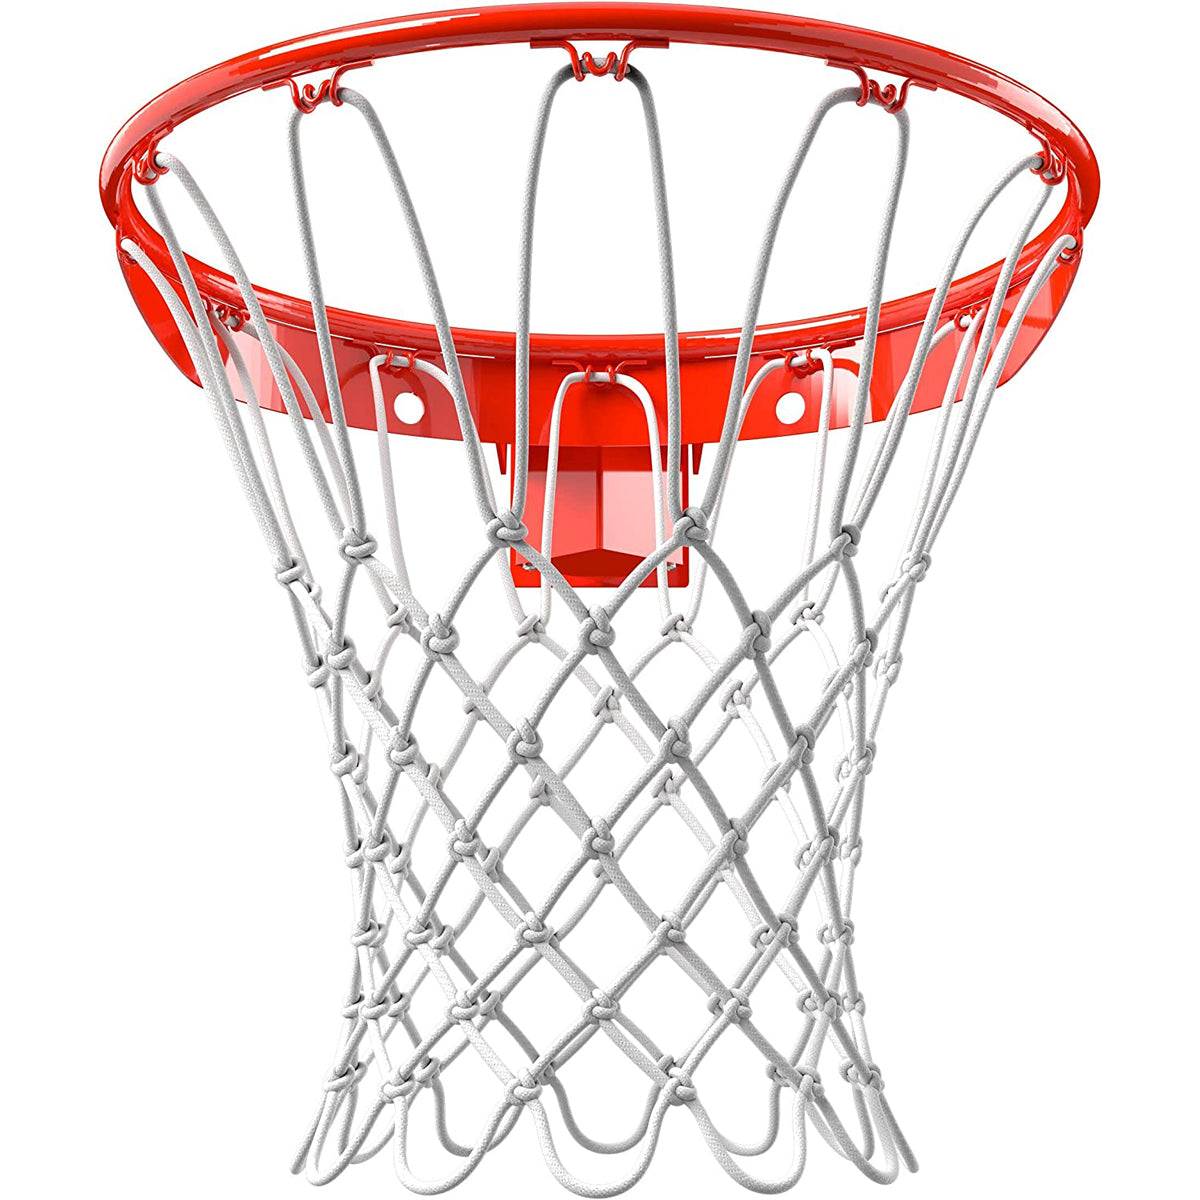 Spalding 180 Breakaway Indoor/Outdoor Basketball Rim - Orange Spalding